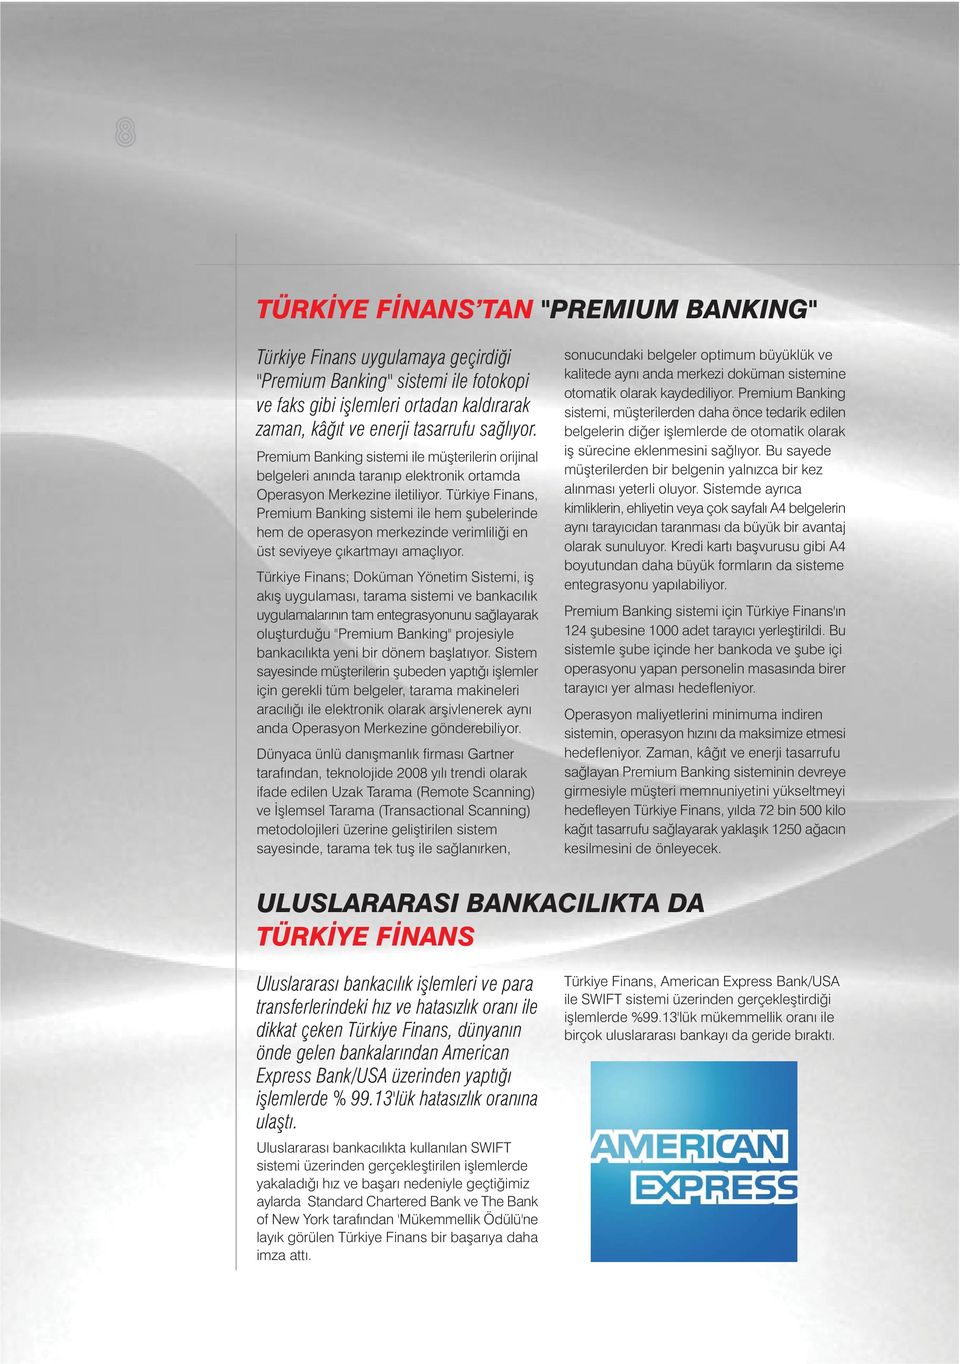 Türkiye Finans, Premium Banking sistemi ile hem þubelerinde hem de operasyon merkezinde verimliliði en üst seviyeye çýkartmayý amaçlýyor.